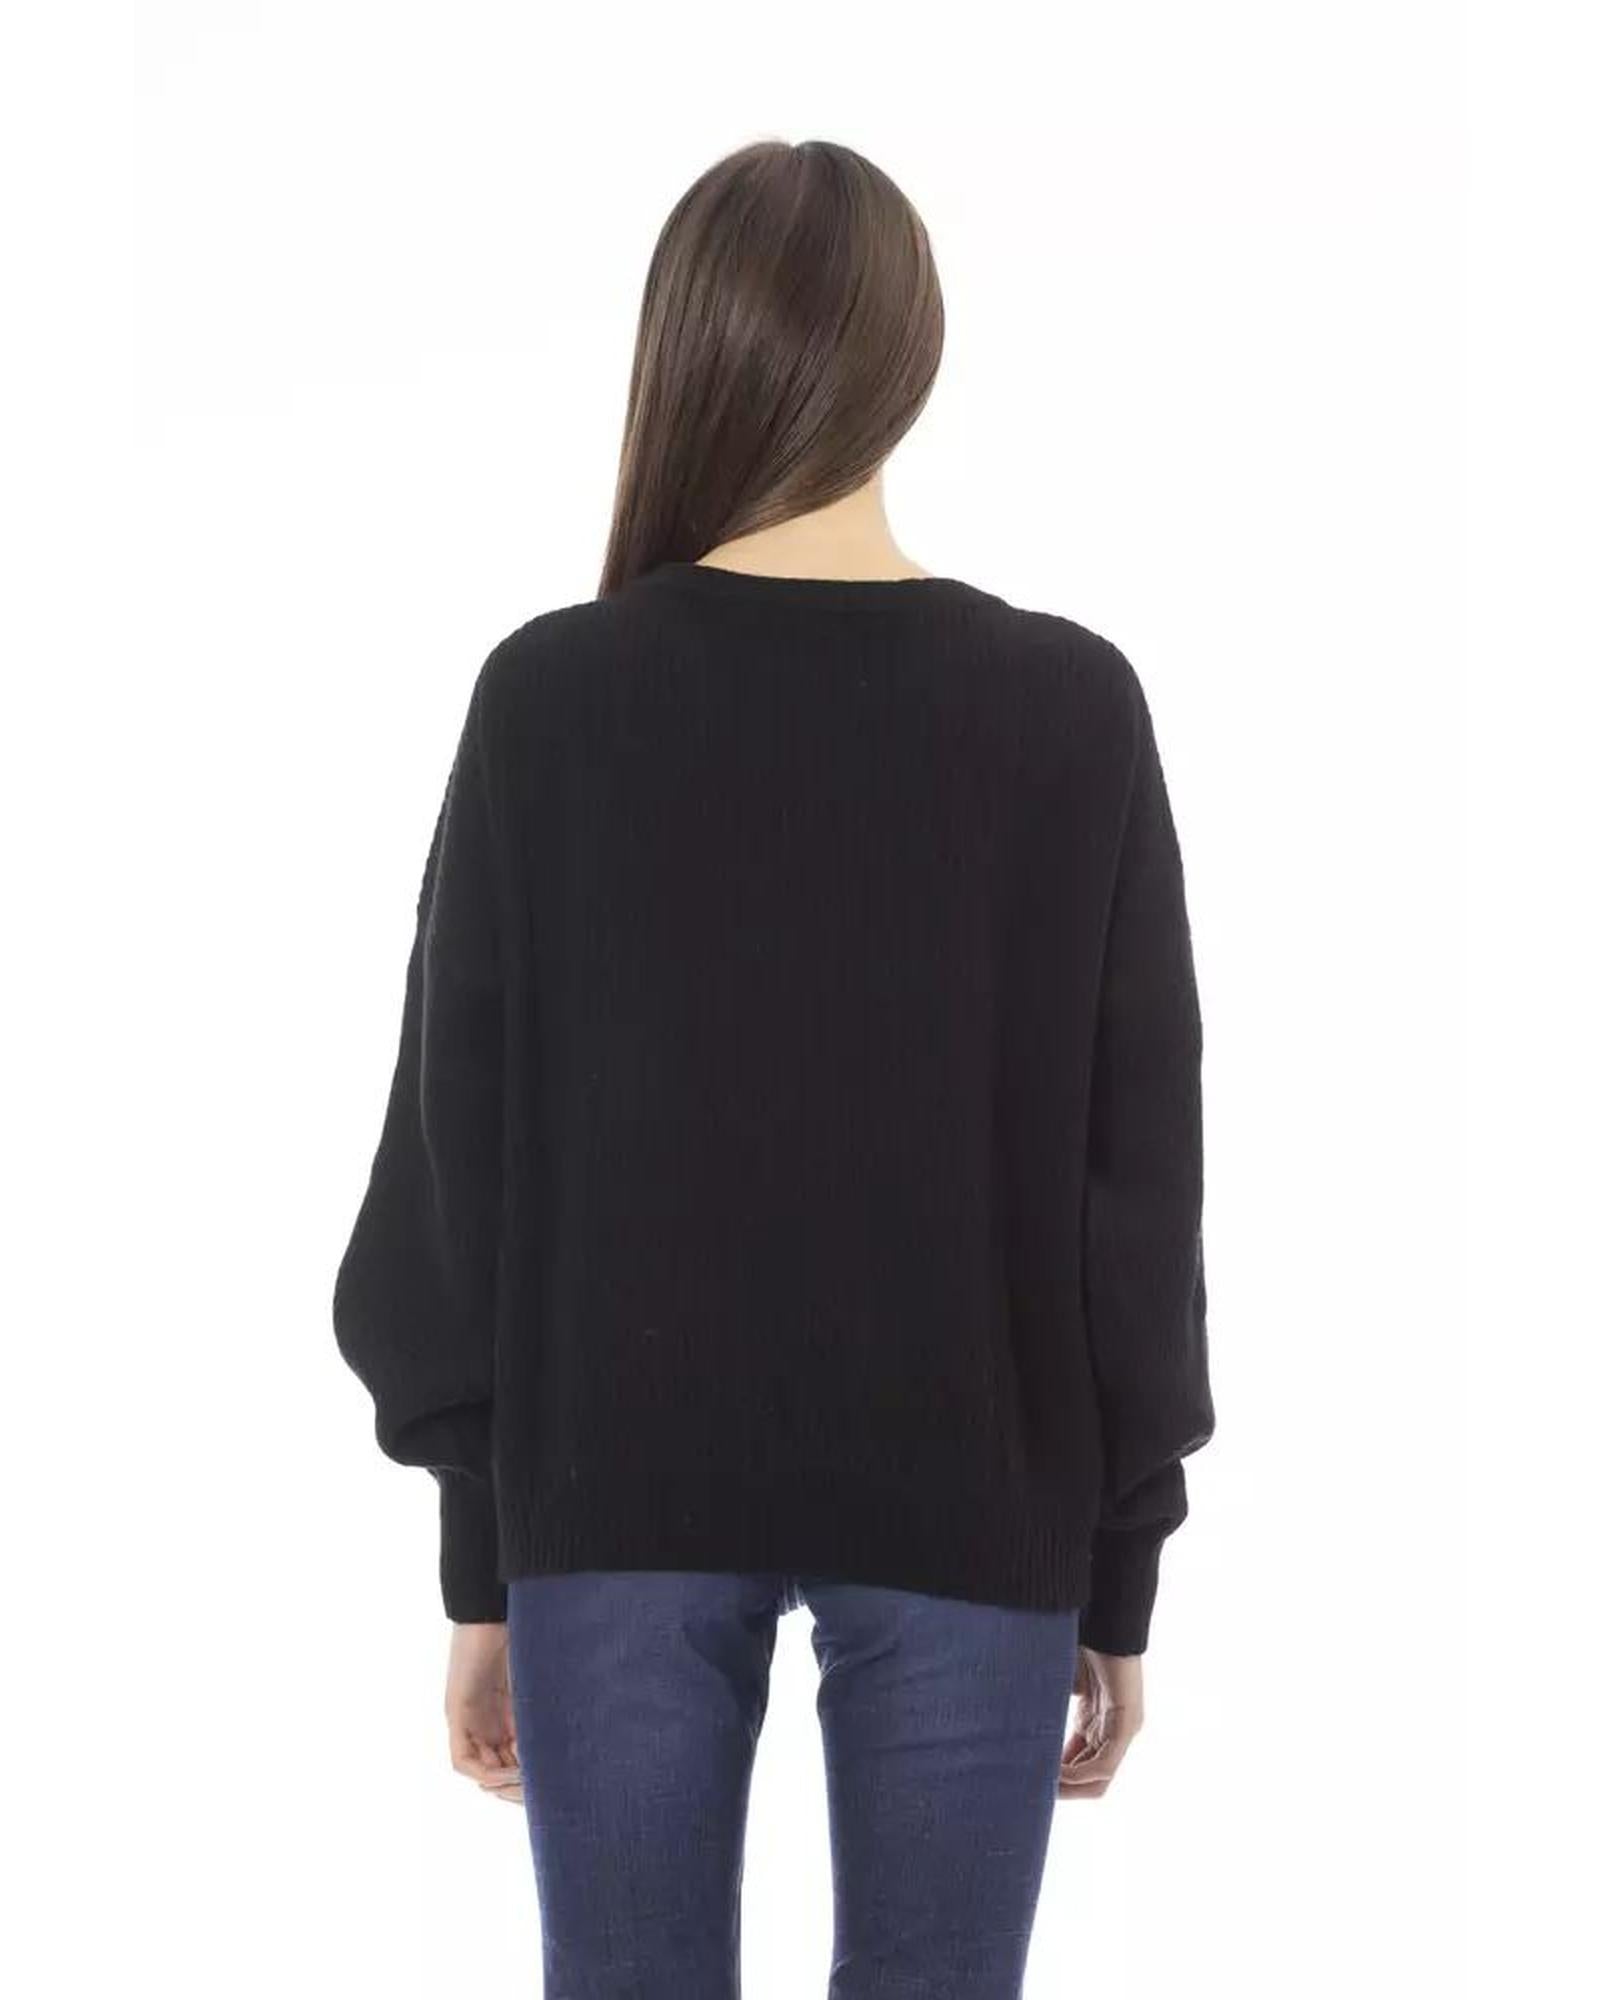 Noir Elegance Baldinini Trend Women'S Wool Sweater